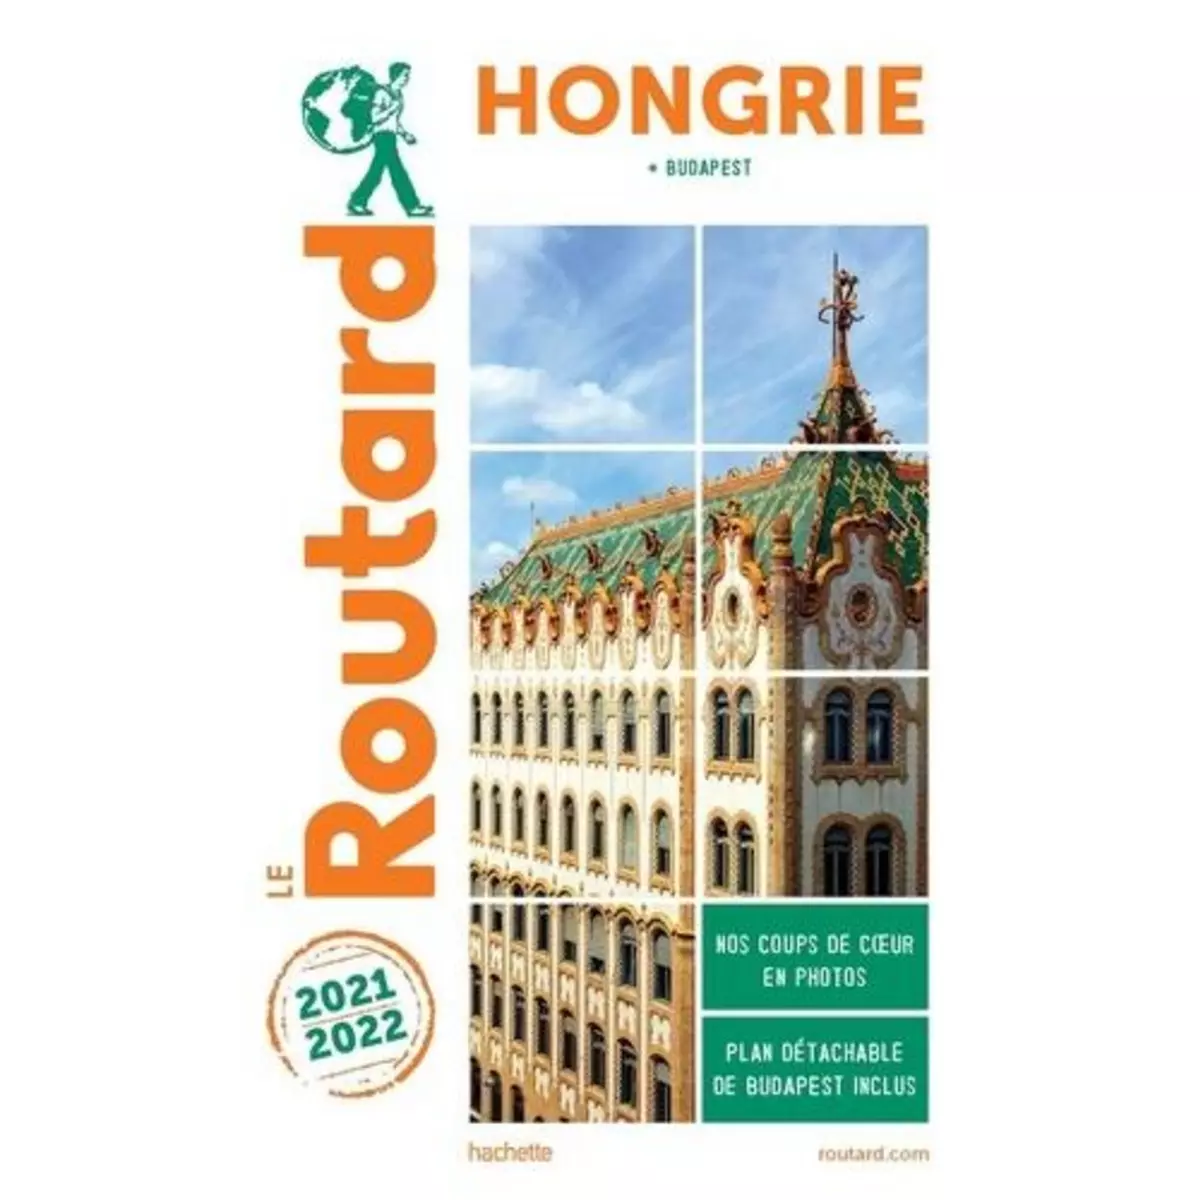  HONGRIE. BUDAPEST, EDITION 2021-2022, AVEC 1 PLAN DETACHABLE, Le Routard